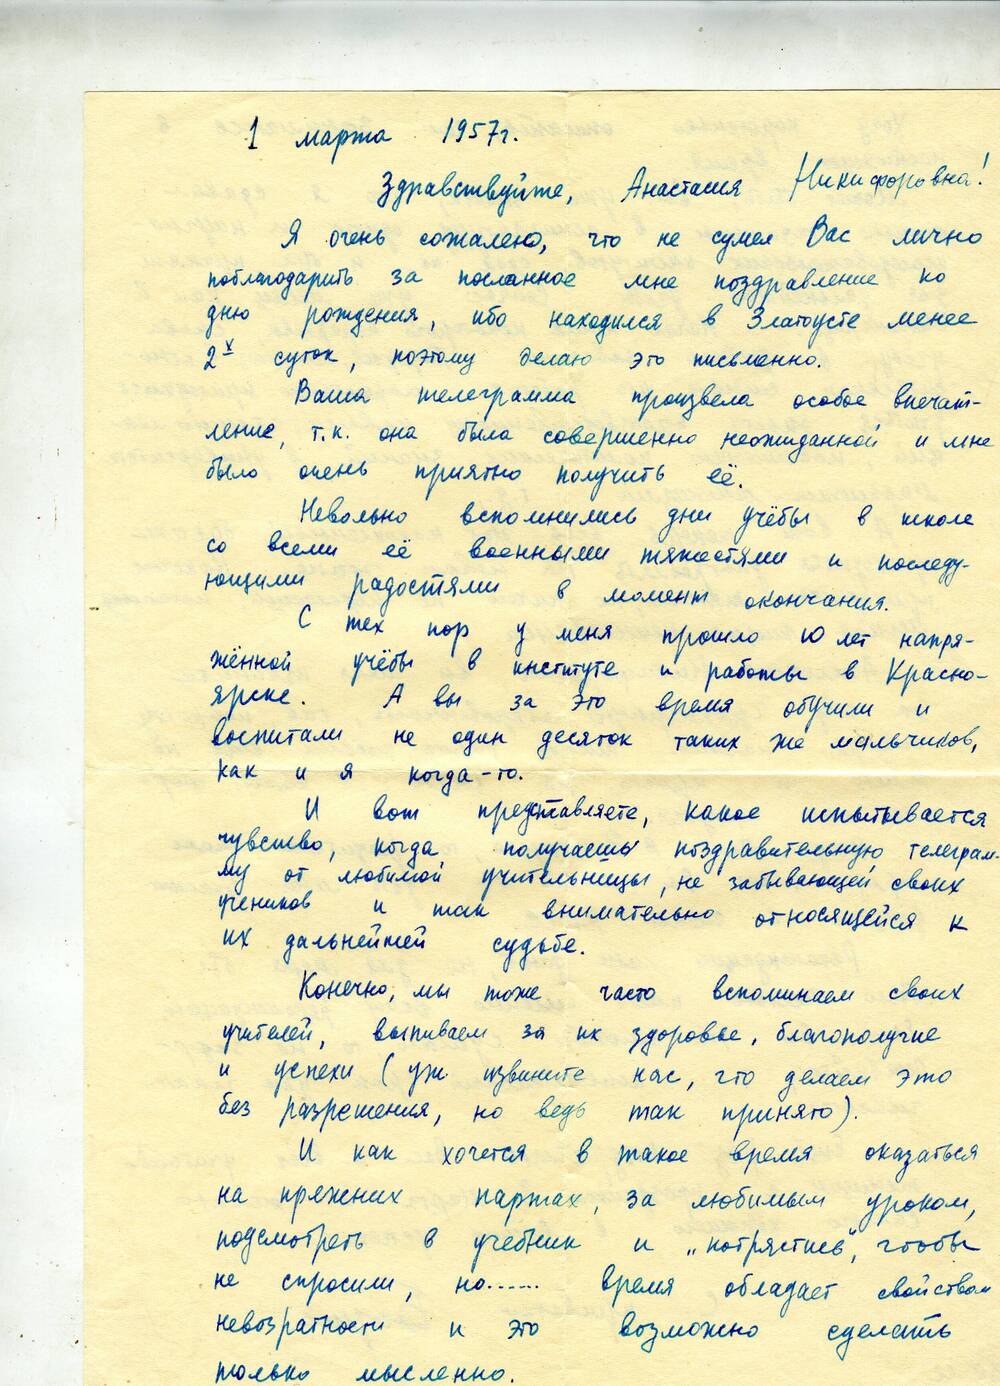 Письмо, написанное Стуловой Анастасии Никифоровне её бывшим учеником Борисом, аспирантом научно-исследовательского института в г. Ленинграде. 1957 г.